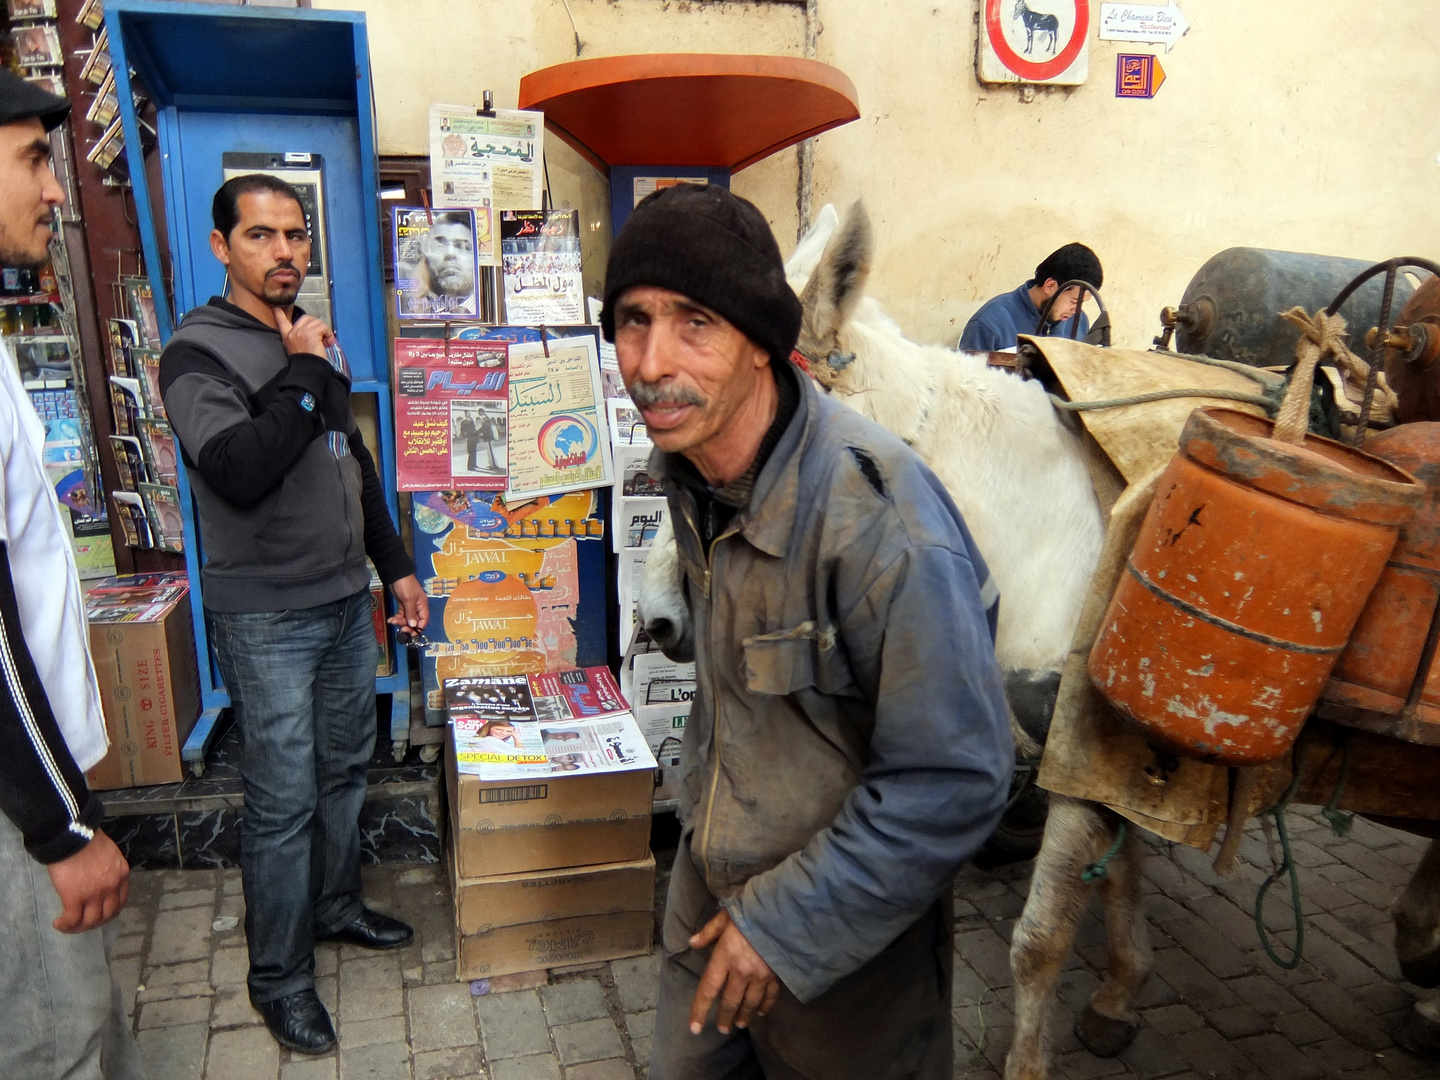 Das Leben ist nicht leicht in Marokko